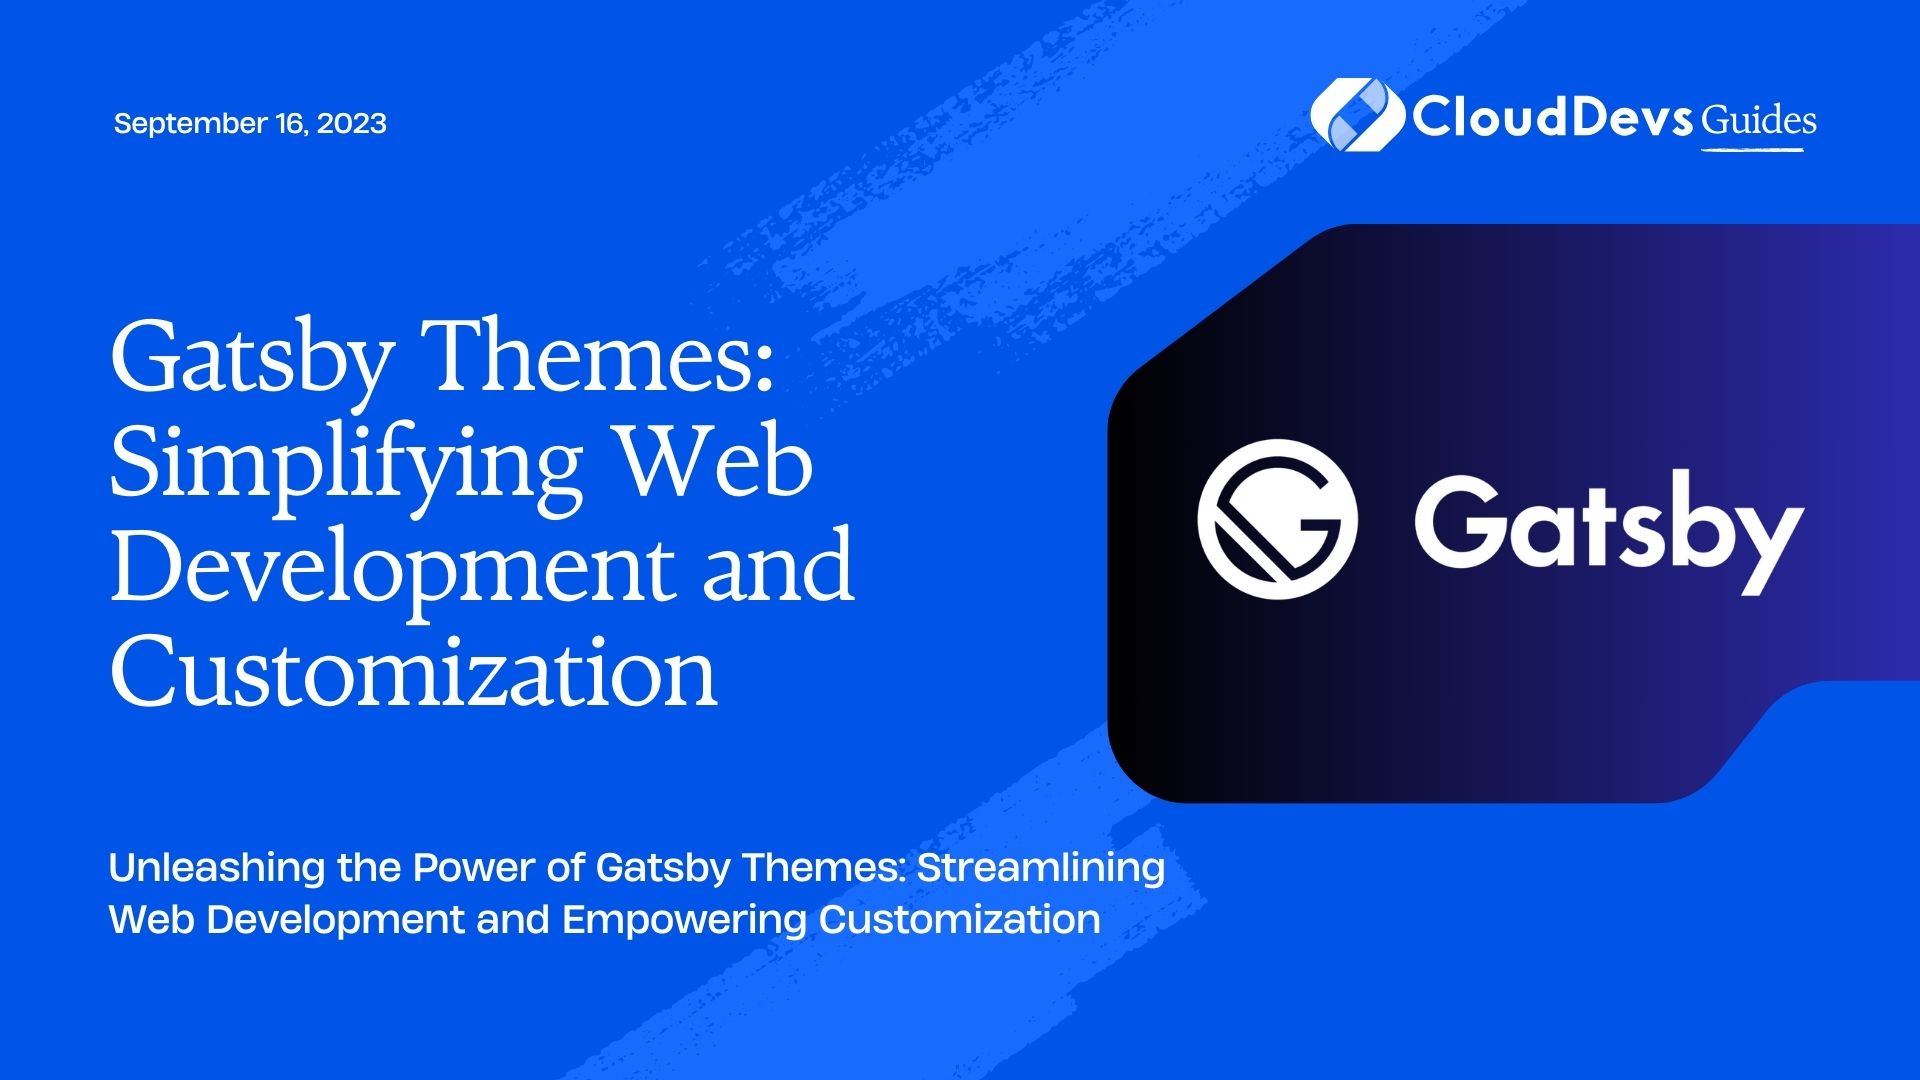 Gatsby Themes: Simplifying Web Development and Customization